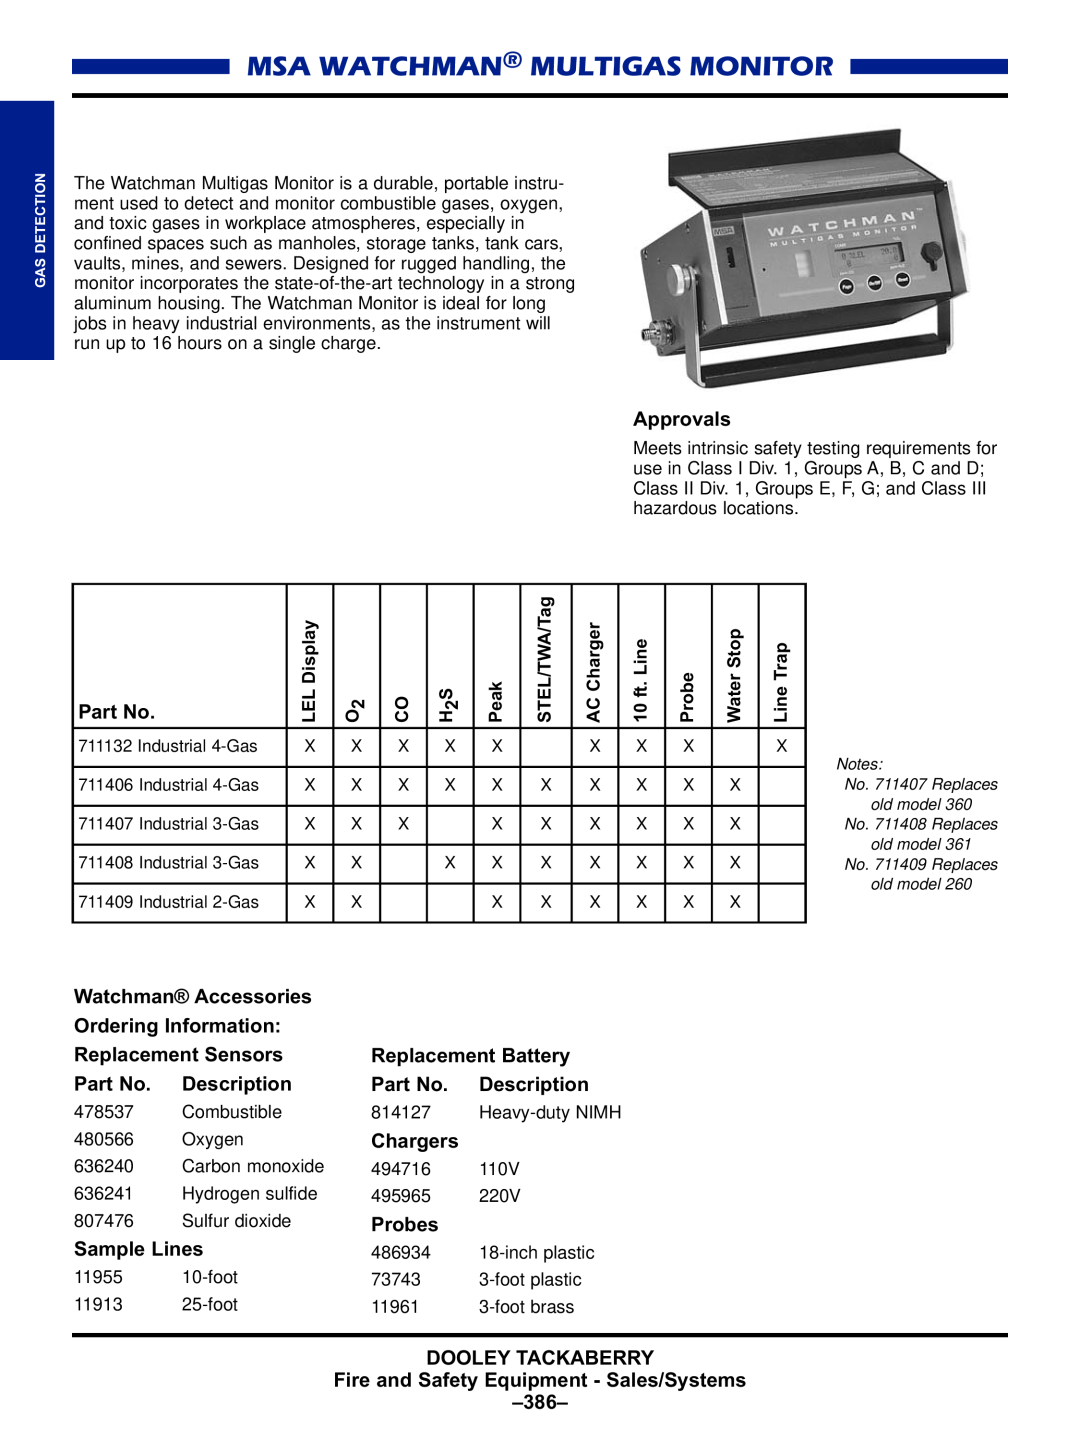 Black & Decker MULTI-GAS DETECTORS manual Msa Watchman Multigas Monitor 